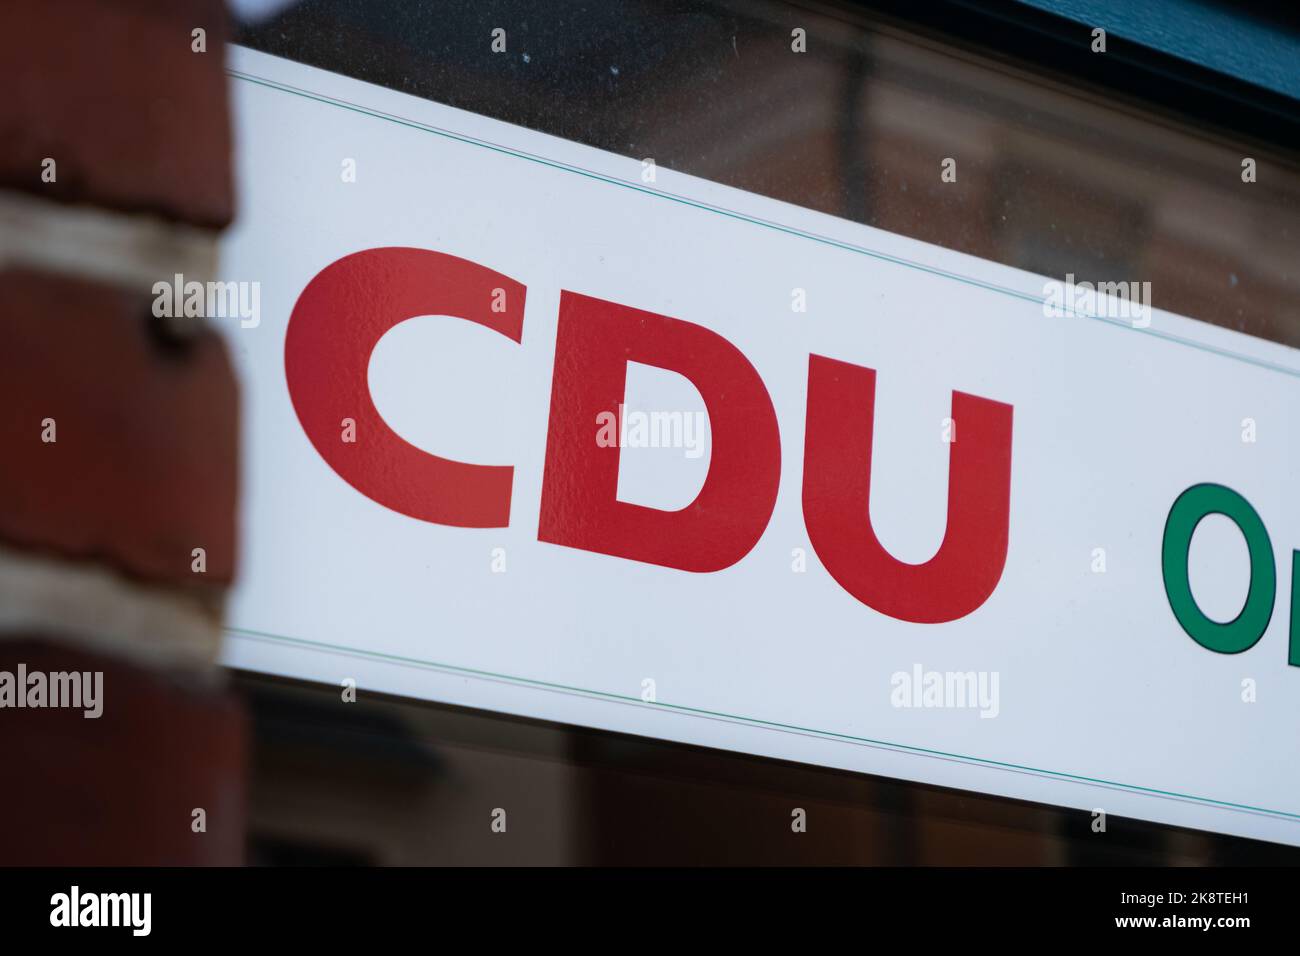 CDU-Logo an der Außenseite eines Gebäudes. Werbung für eine große deutsche politische Partei auf einem Fensterglas eines Büros. CDU bedeutet Christlich-Demokratische Union. Stockfoto